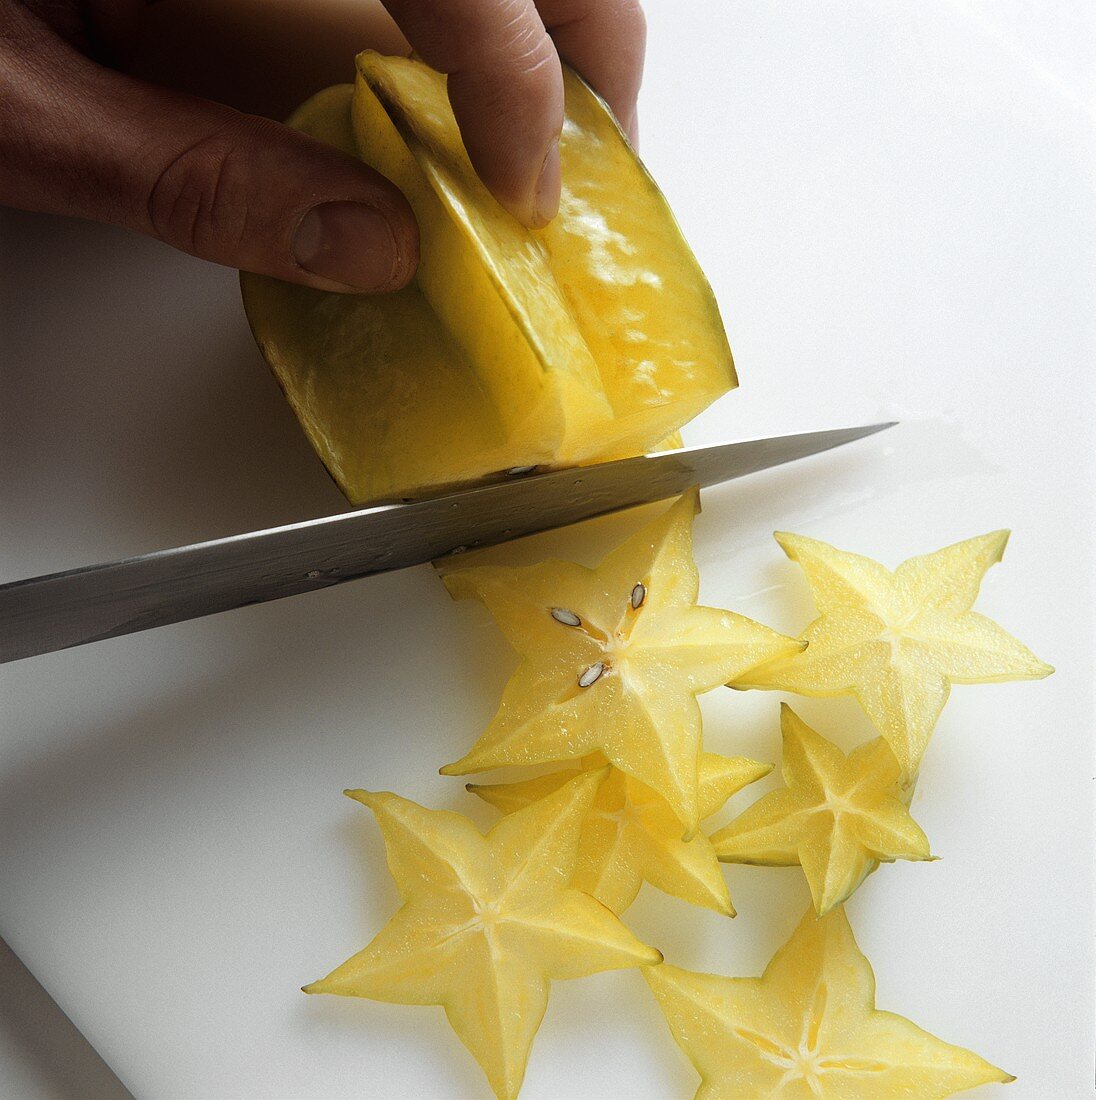 Cutting carambola star